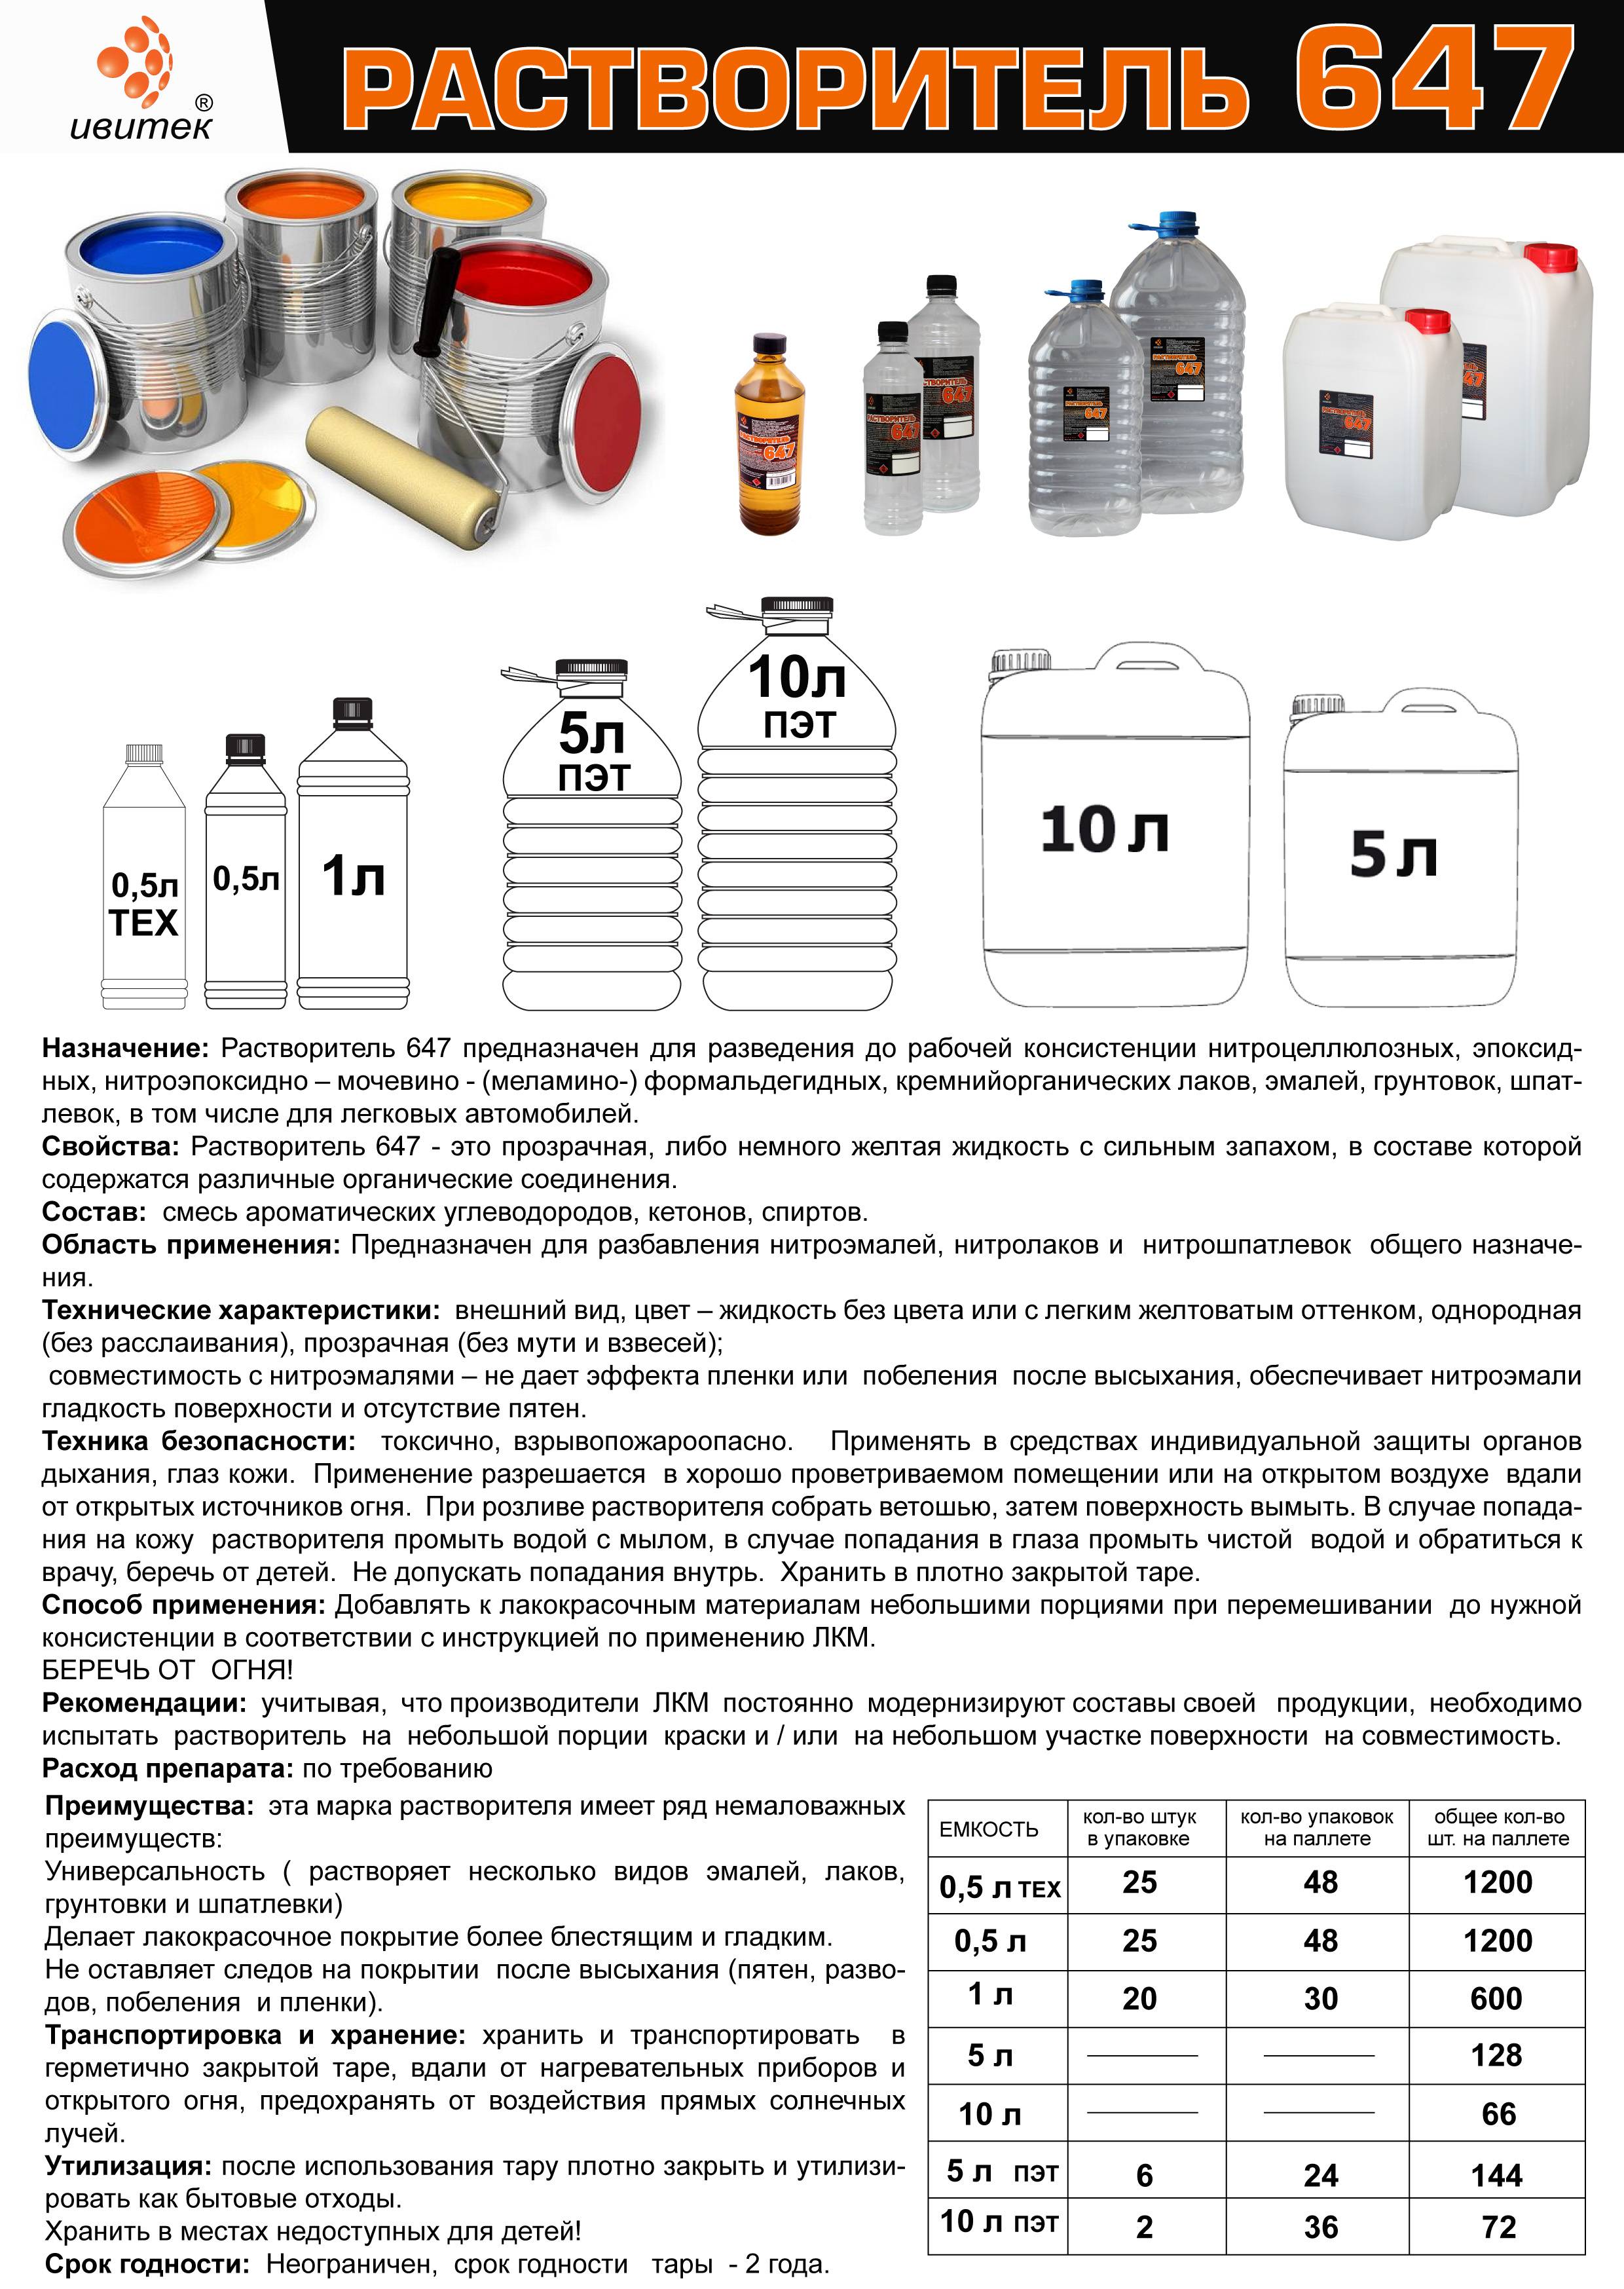 Как делается аквапринт: технология нанесения, необходимое оборудование - fin-az.ru